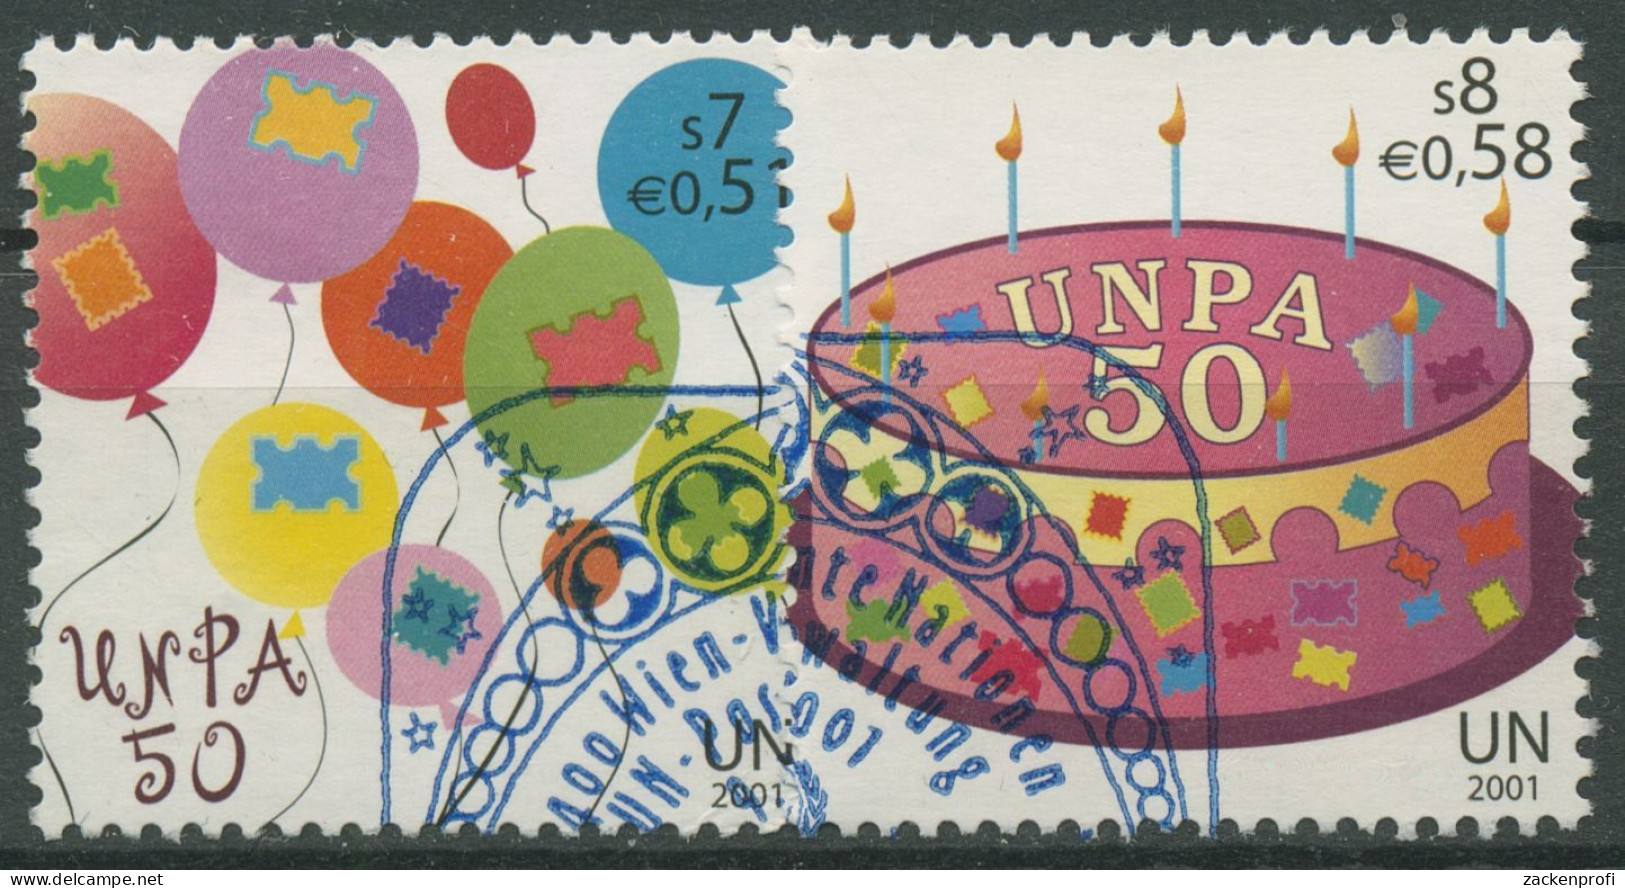 UNO Wien 2001 UN-Postverwaltung Geburtstagsgrüße 342/43 Gestempelt - Usati